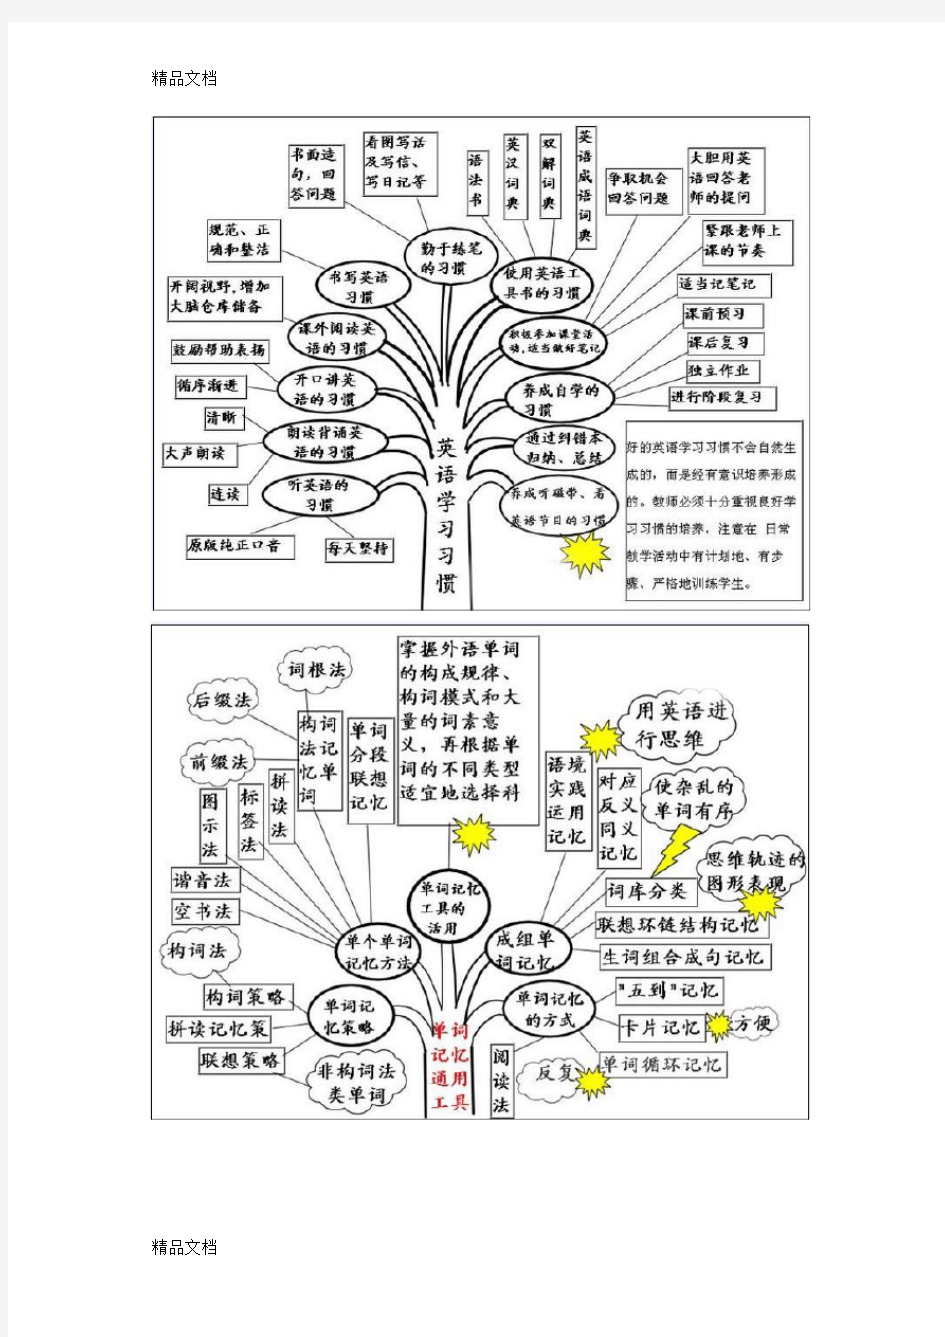 最新英语语法树状图讲解